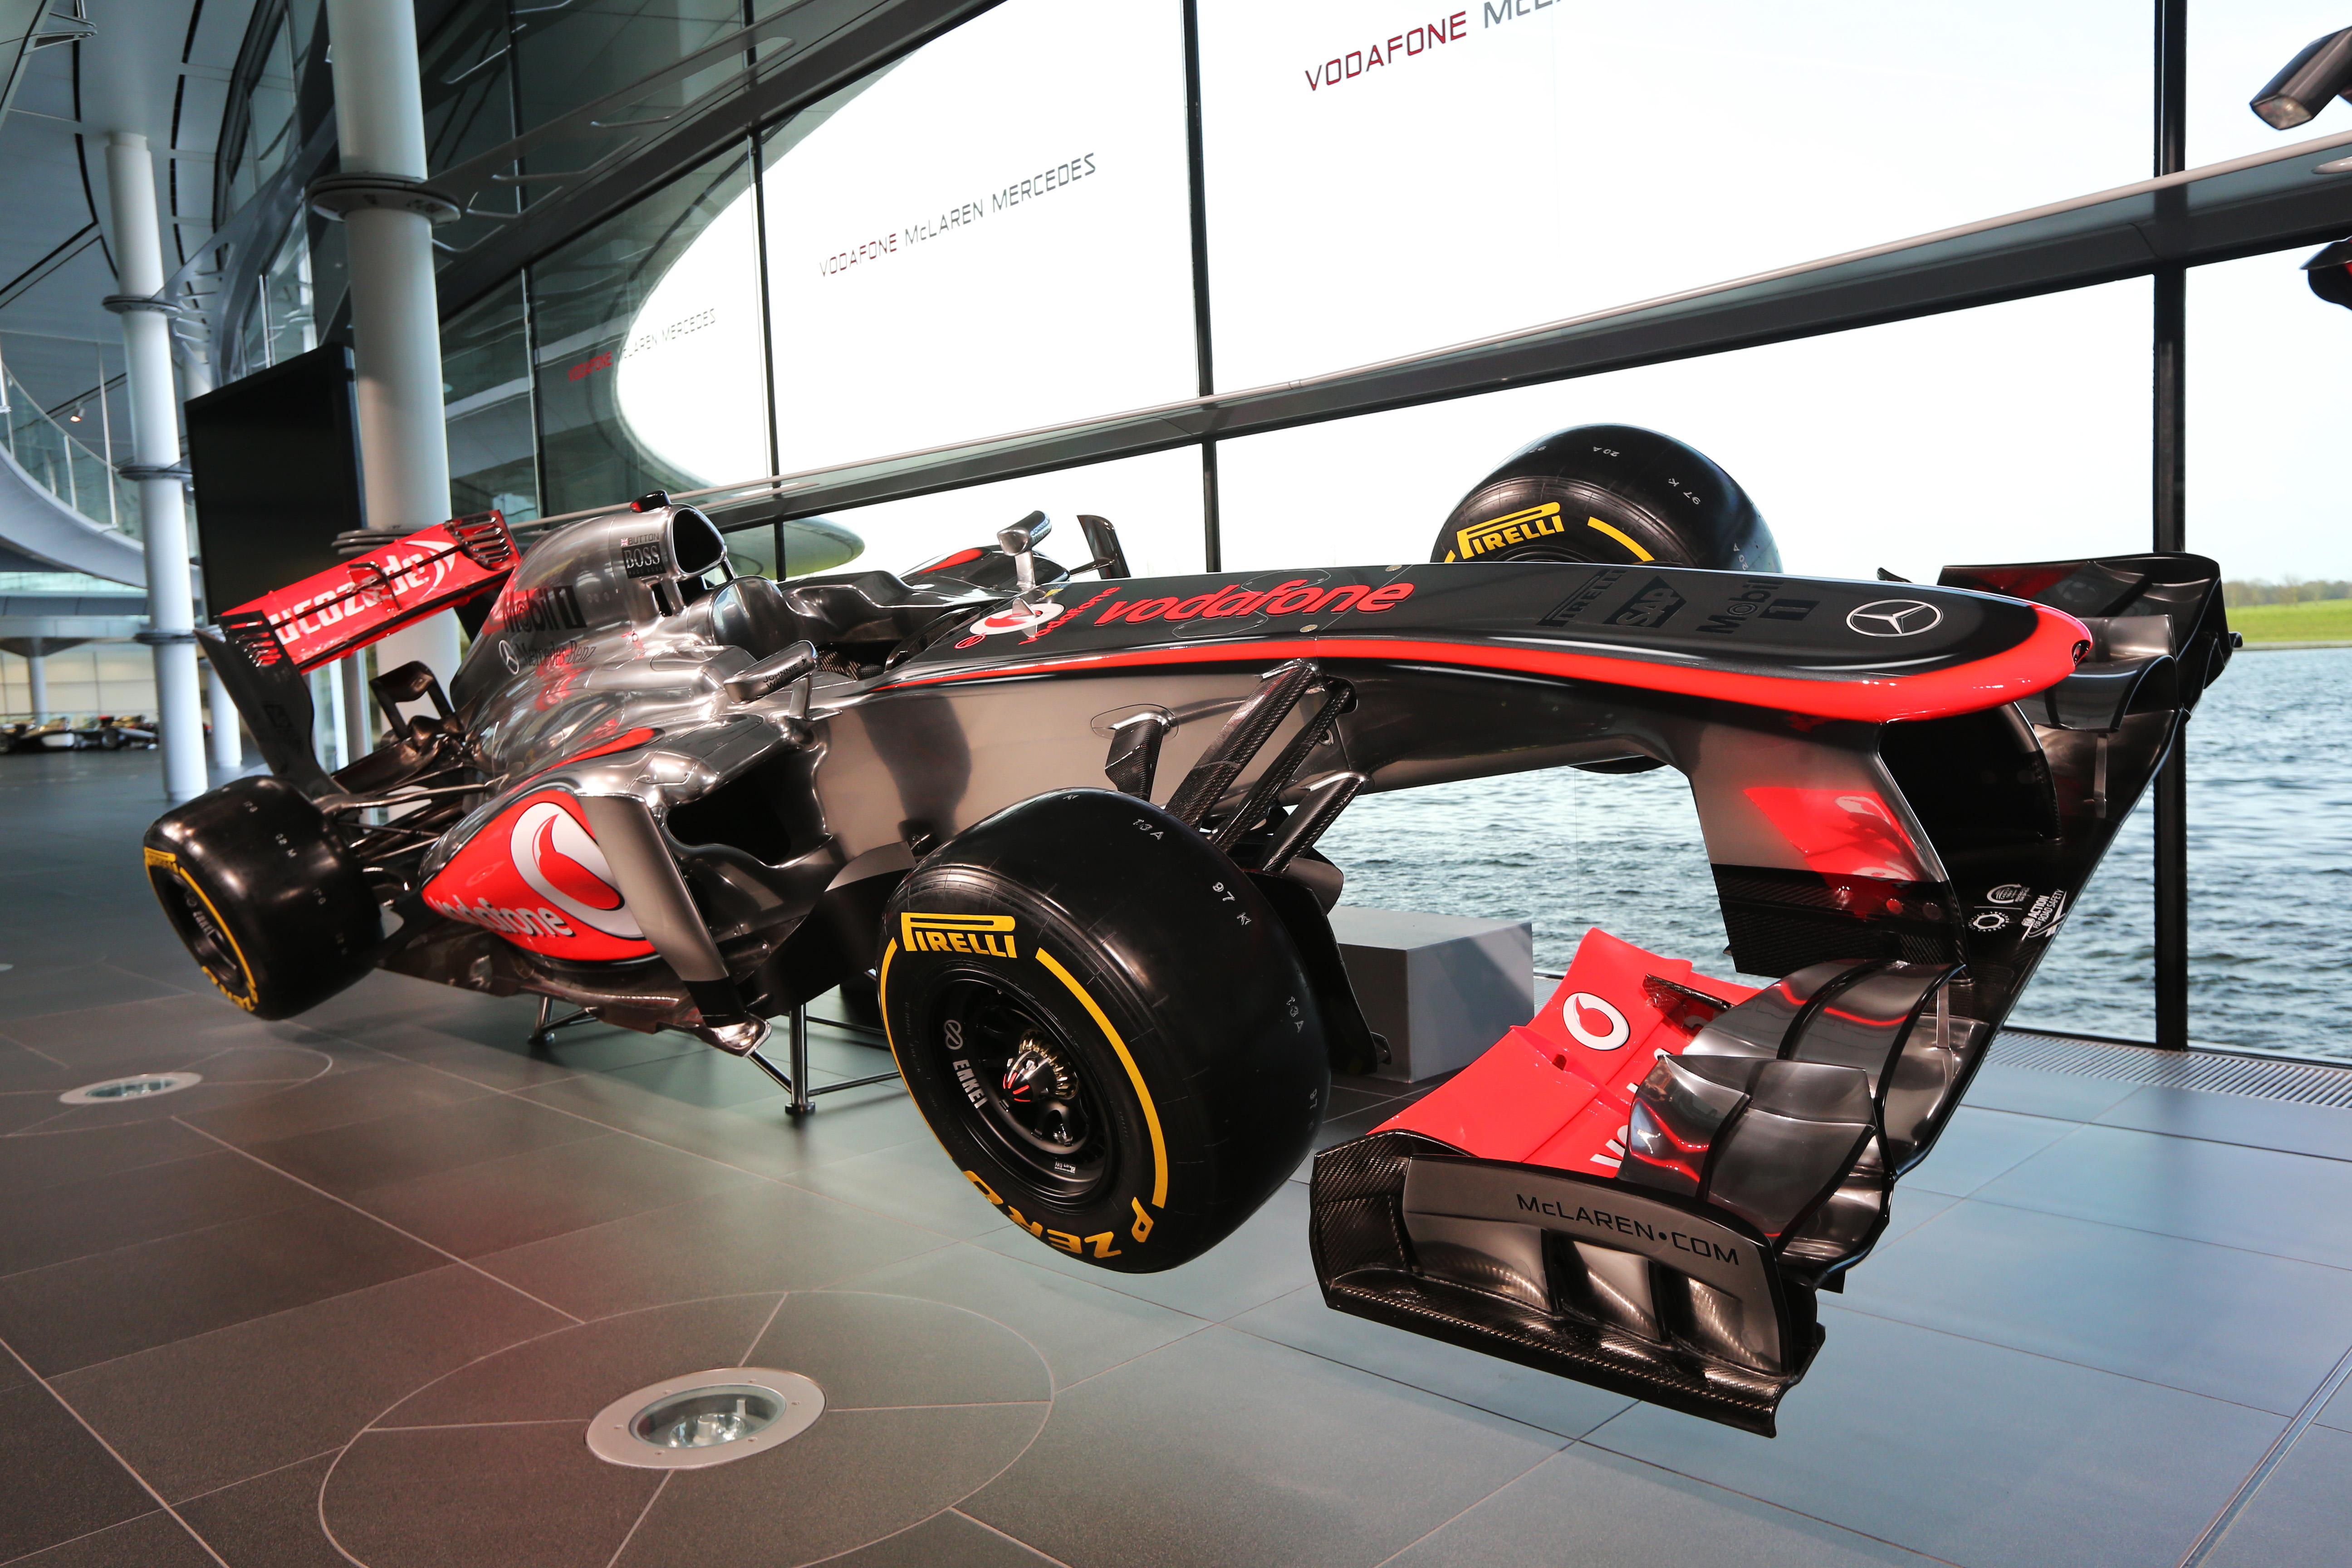 Live: McLaren presenteert nieuwe MP4-28